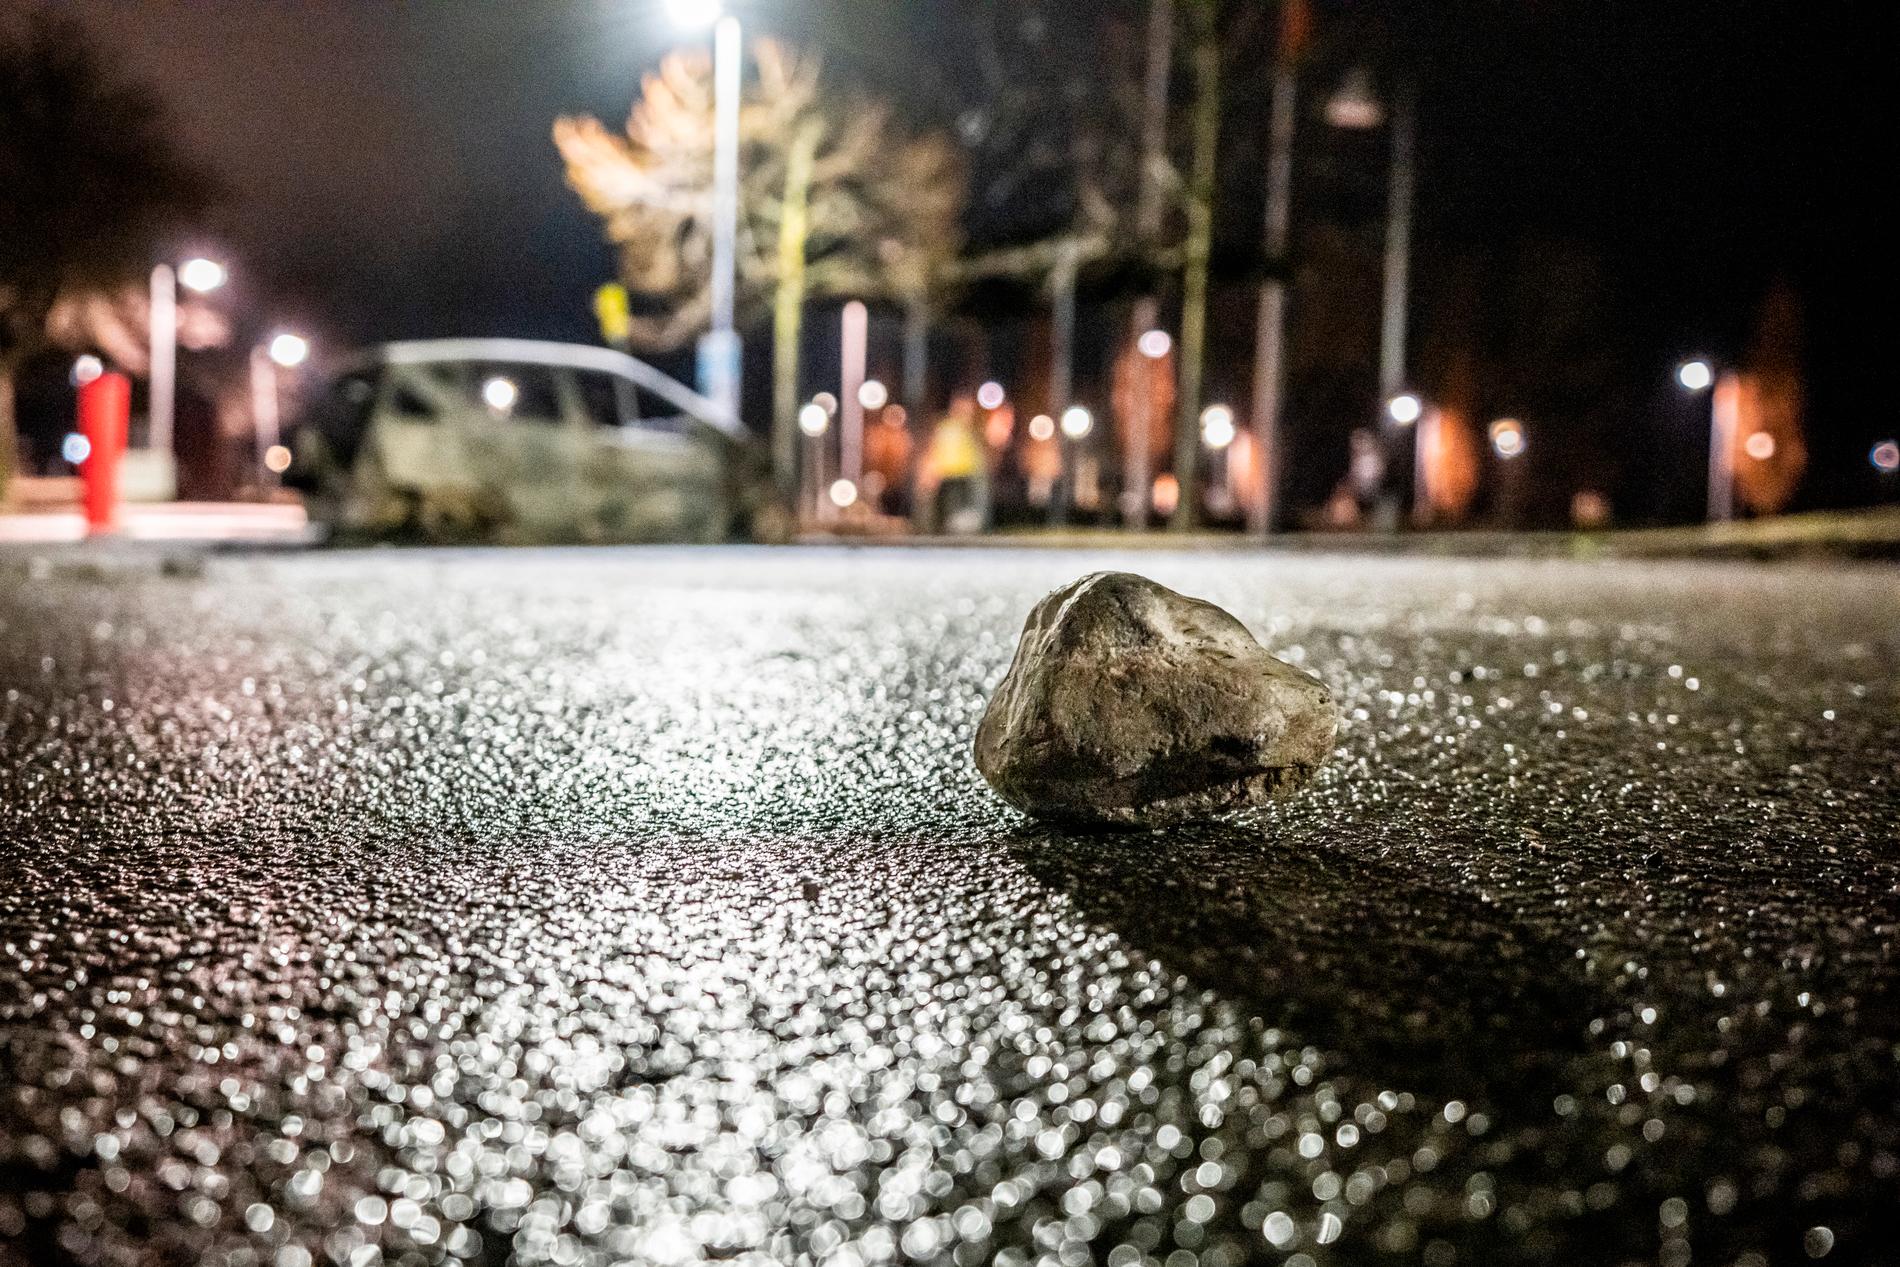 En sten syns på marken intill en utbränd bil efter upploppen. Flera maskerade personer kastade sten mot polisen tidigare under dagen.